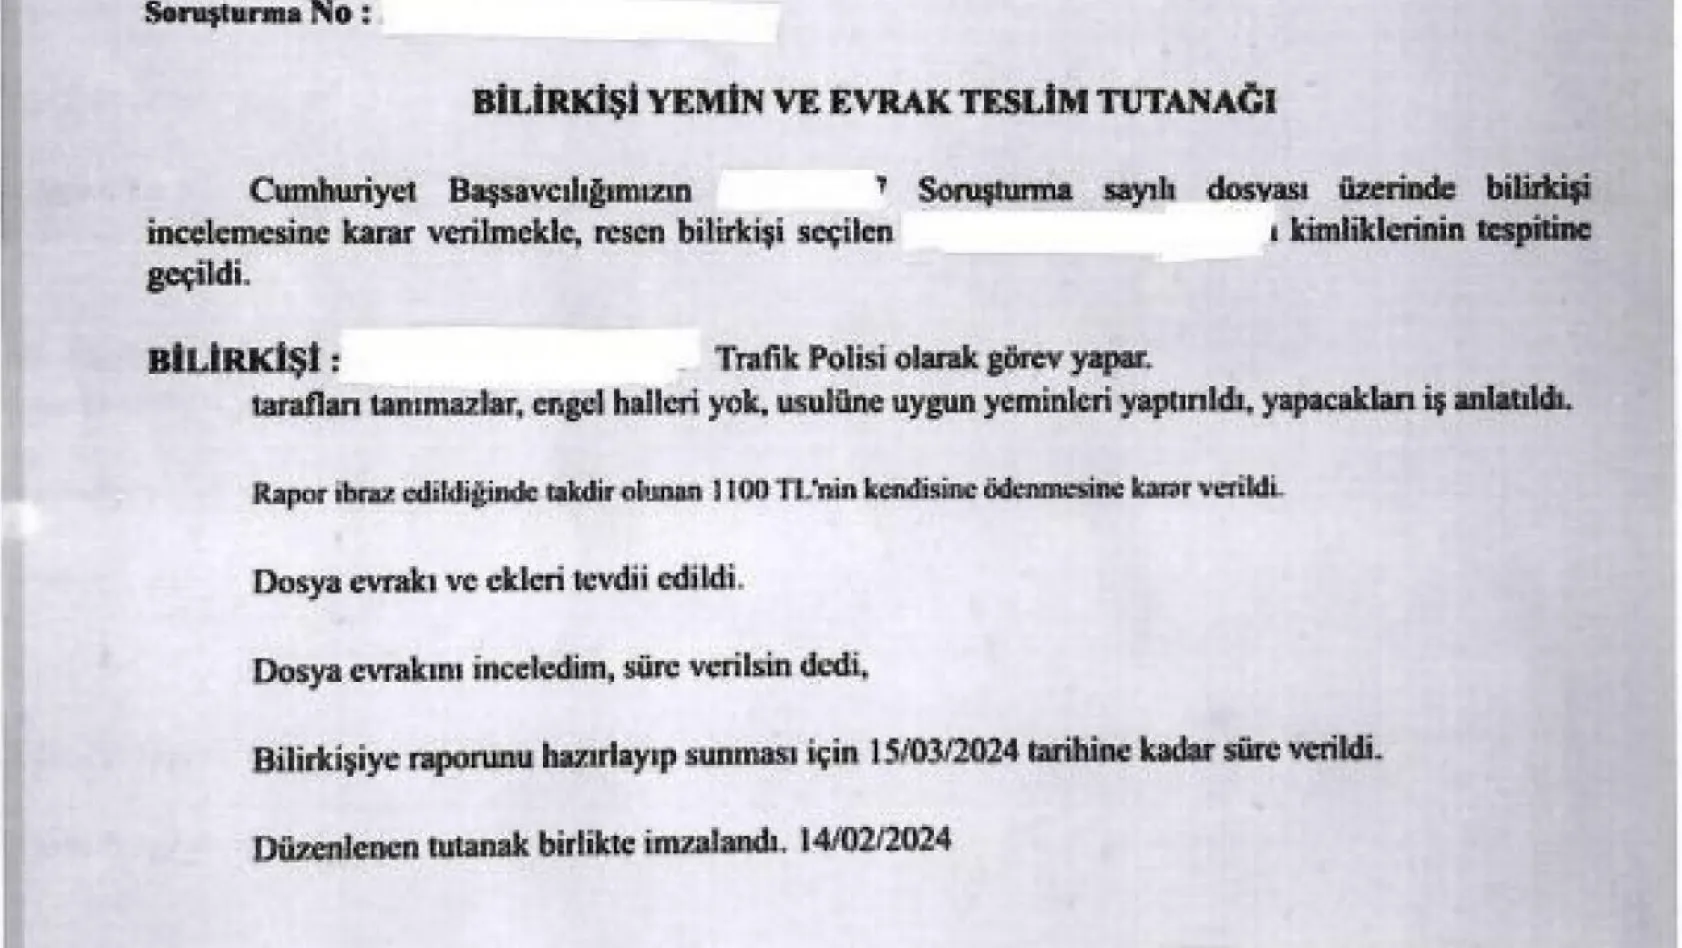 Cem Garipoğlu'nun otopsi görüntülerini inceleyerek rapor hazırlayan bilirkişinin trafik polisi olduğu iddia edildi